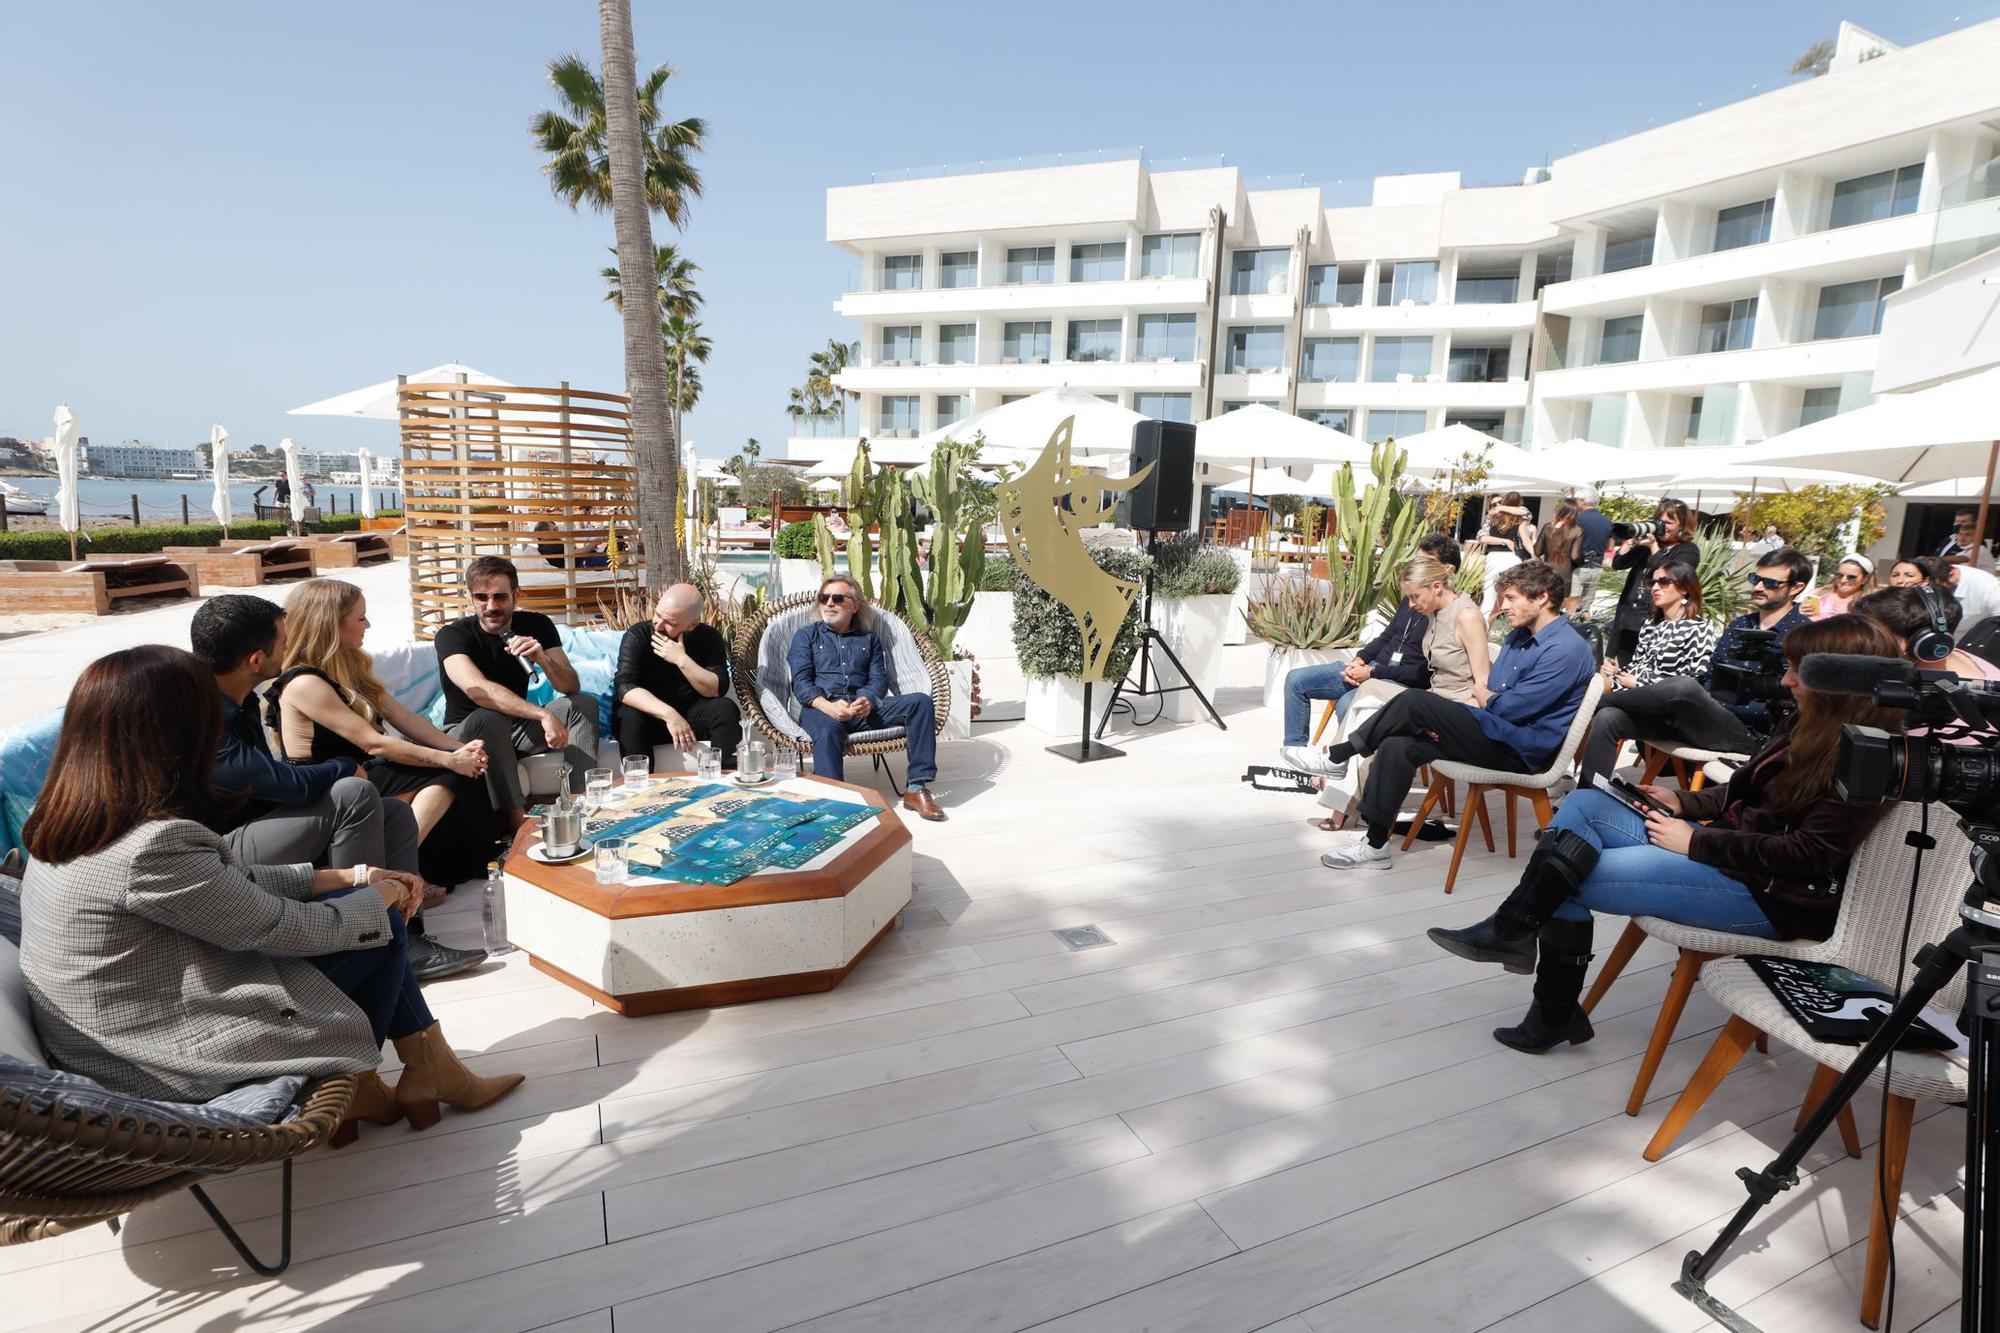 Festival de cine en Ibiza: 'Libélulas' de Luc Knowles abre un Ibicine centrado en la defensa del entorno marino